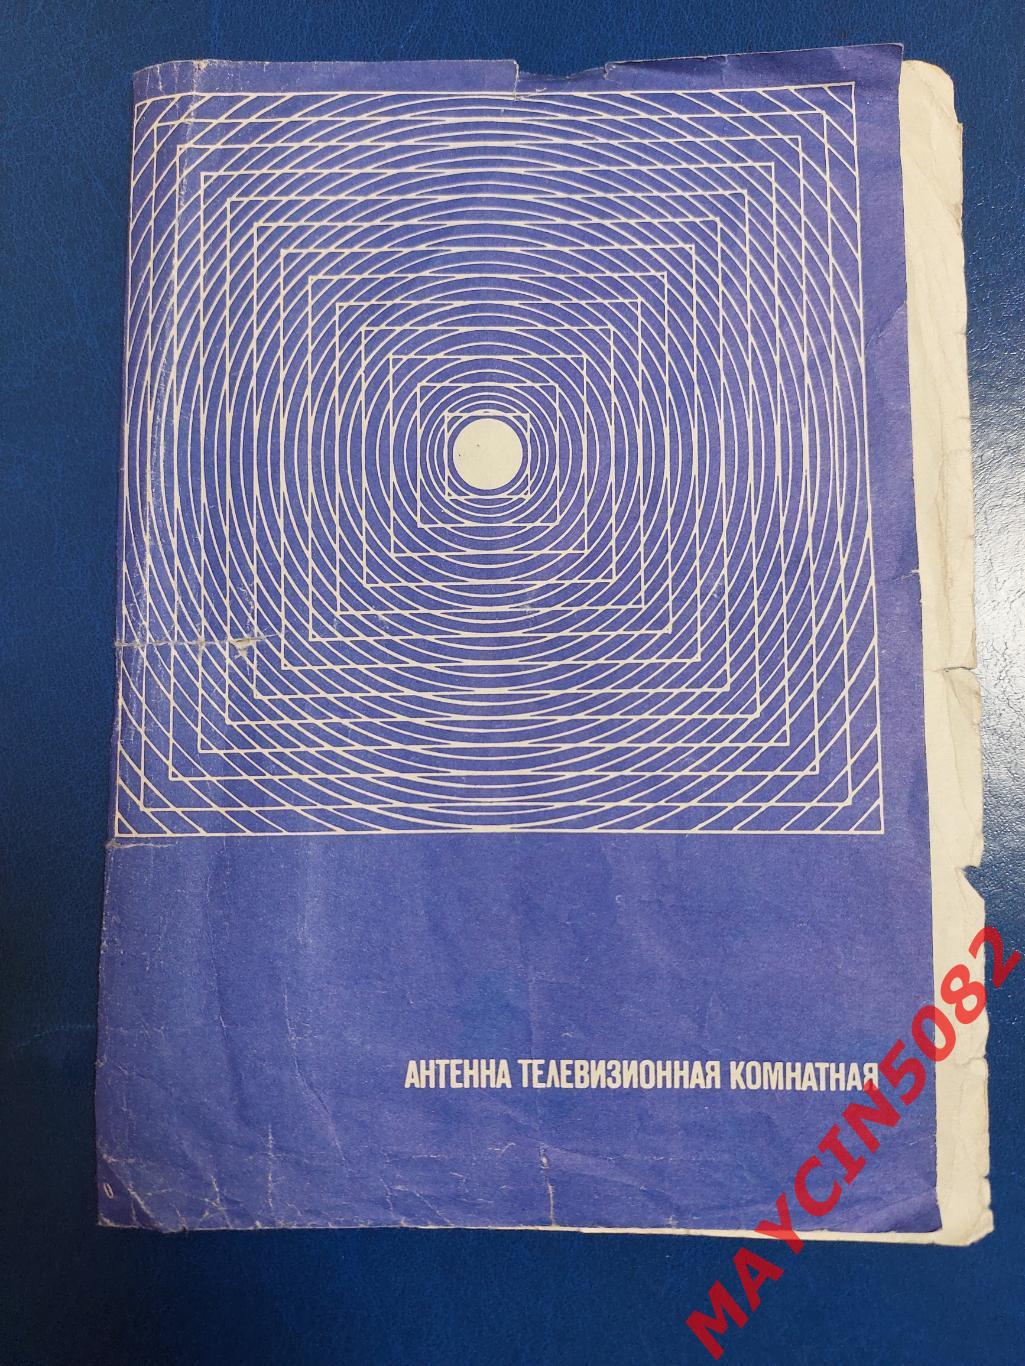 Руководство по эксплуатации. Антенна телевизионная комнатная. 1978 год. Москва